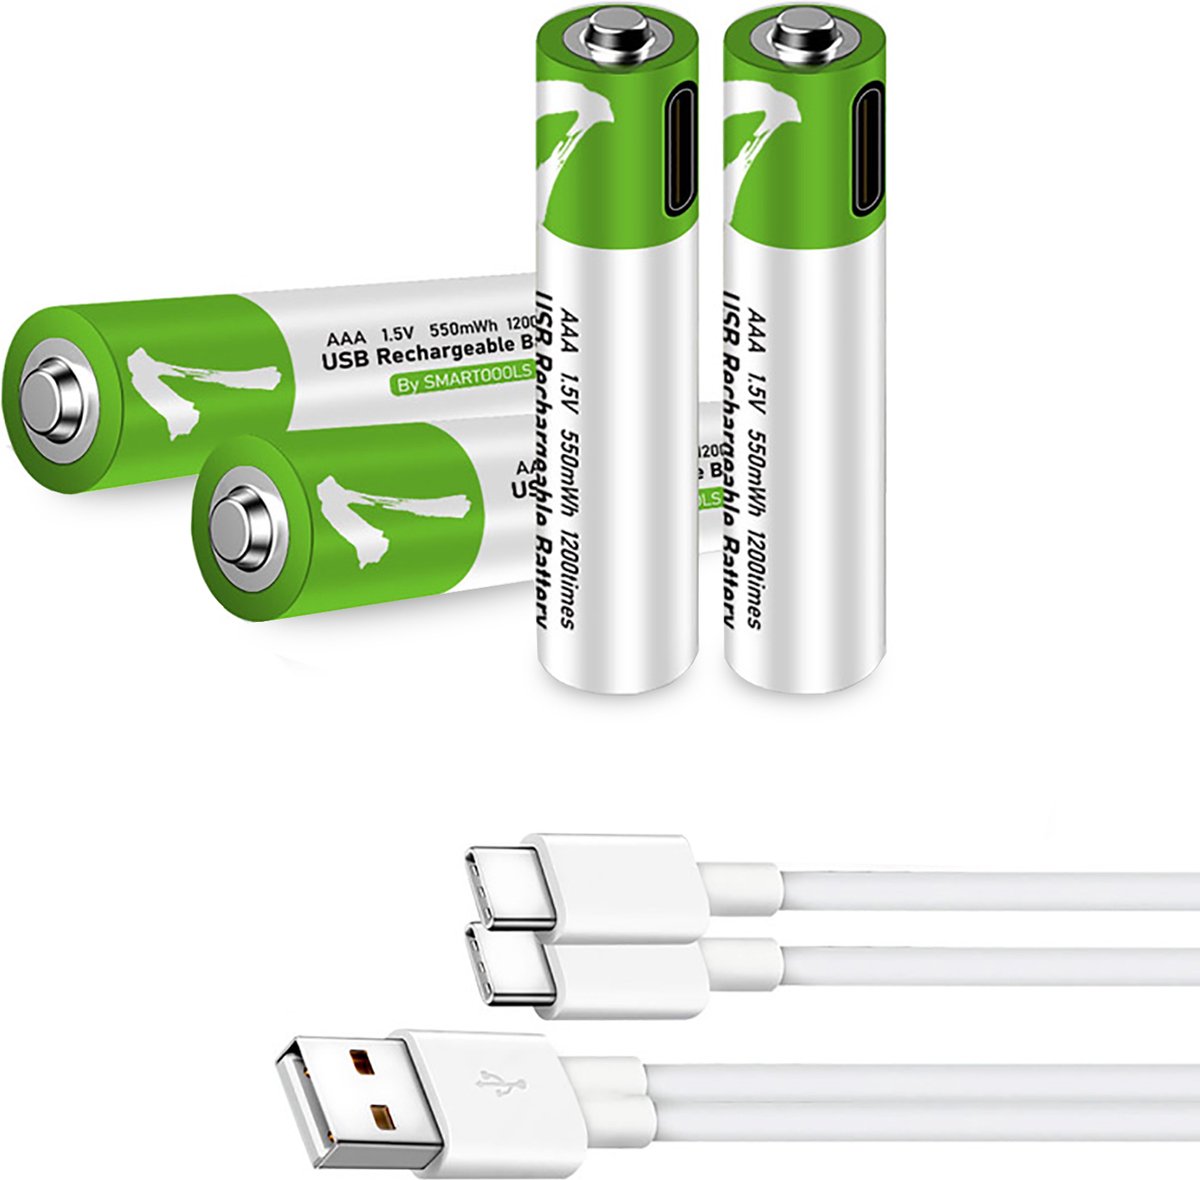 Batterie Li-ion rechargeable USB MaxiQualis 9V 650mAh - Batterie